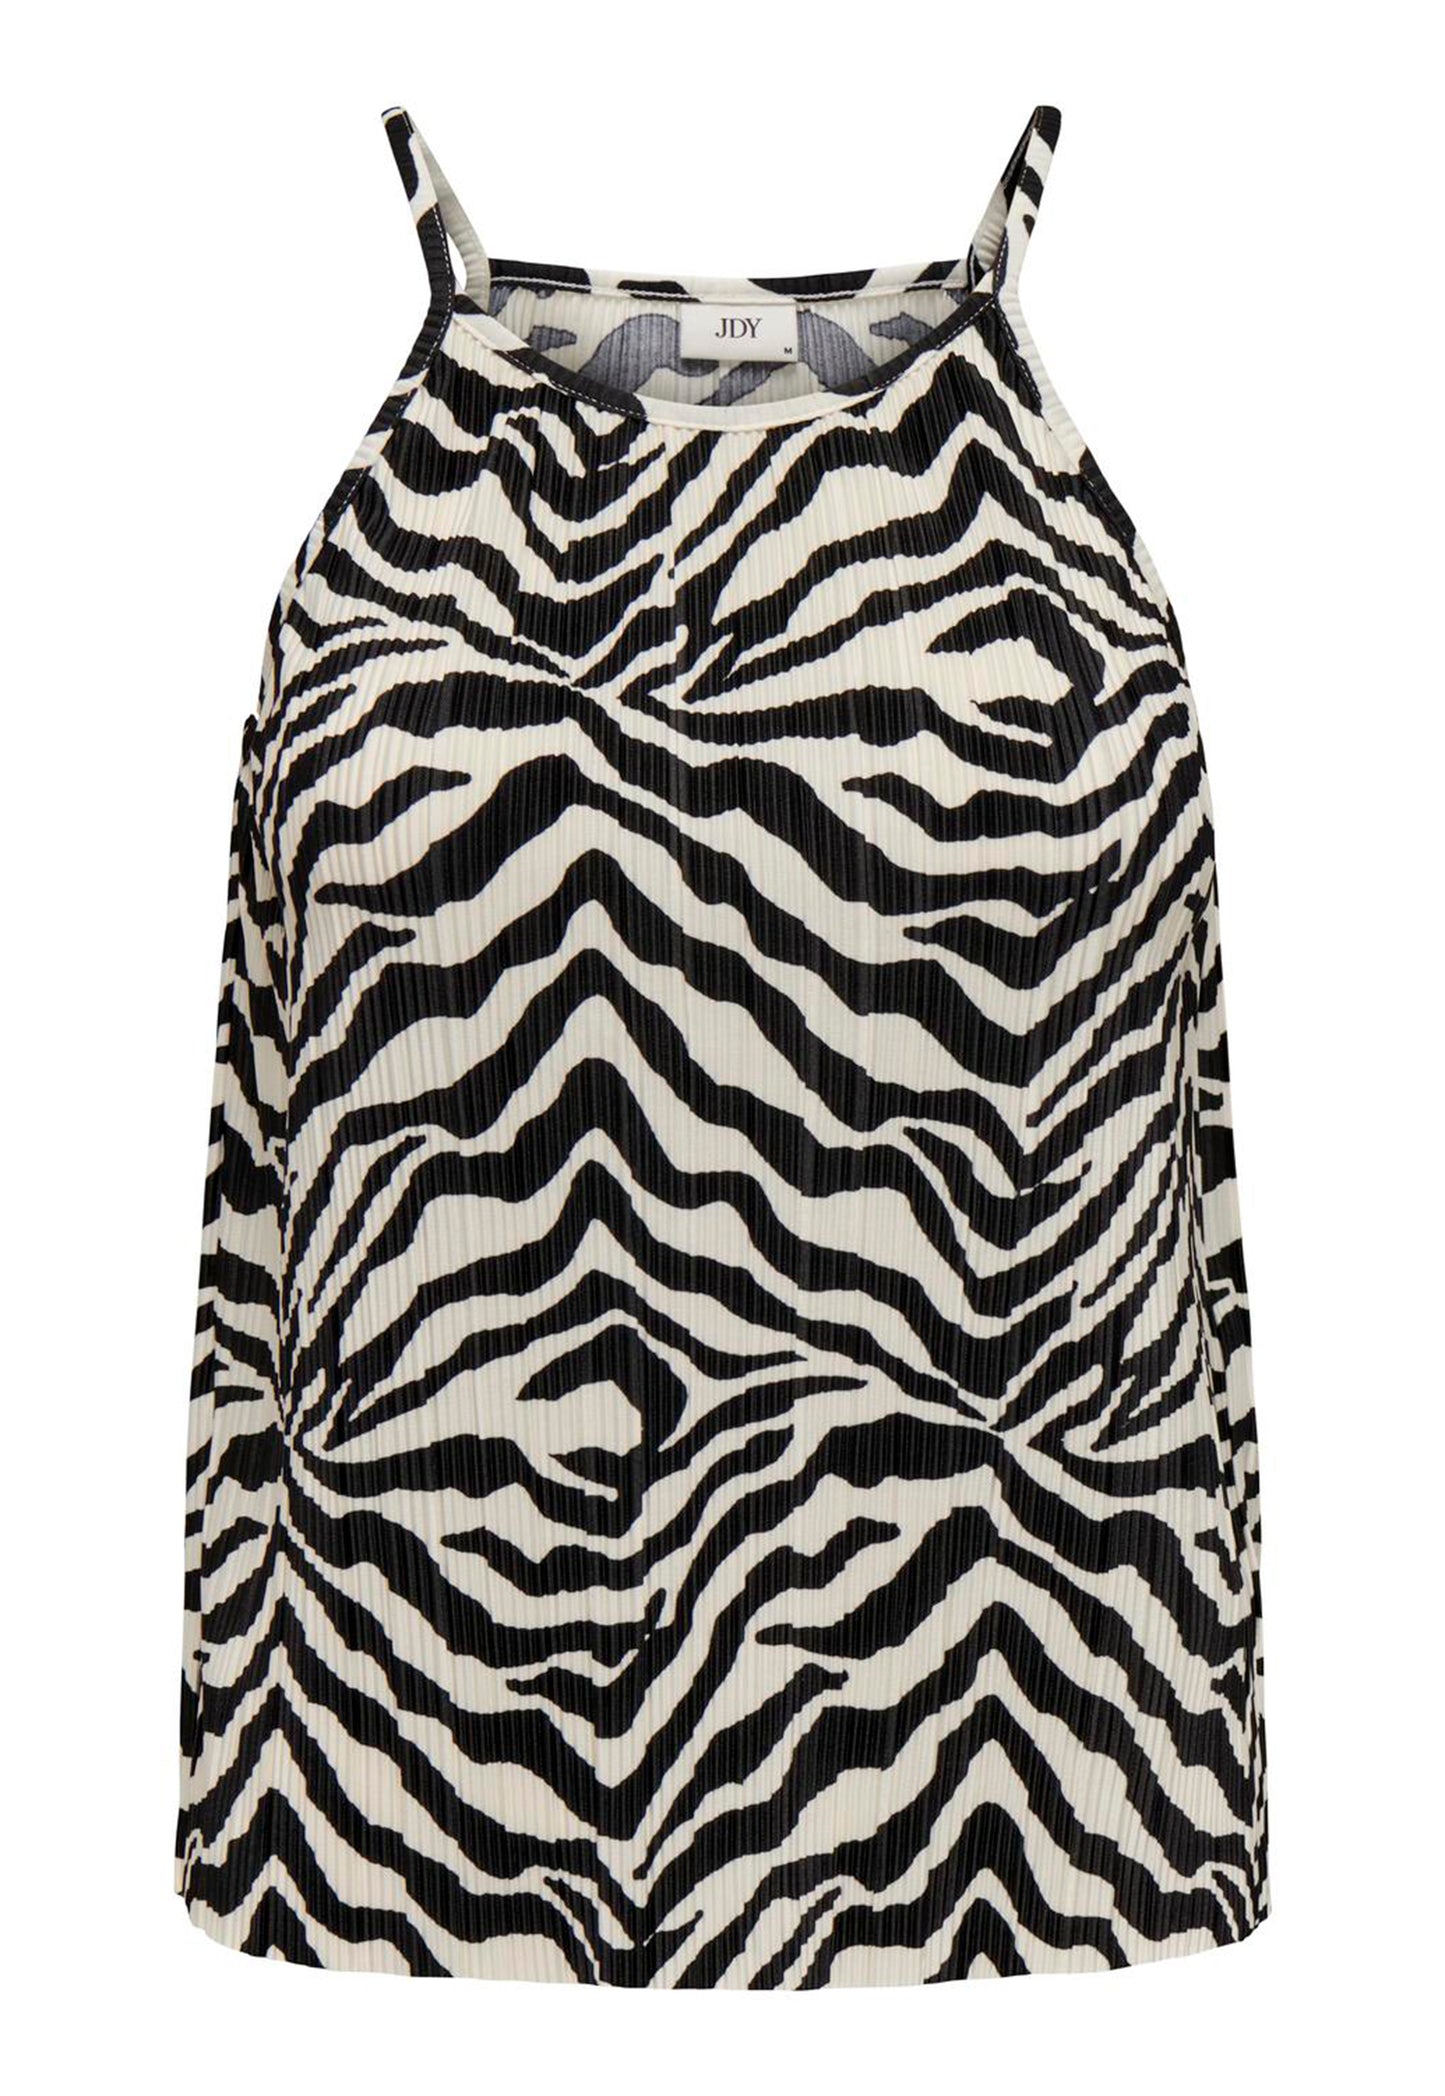 
                  
                    JDY Bravo Zebra Print Plisse Racer Strappy Vest Top i Black & Cream - One Nation Clothing
                  
                